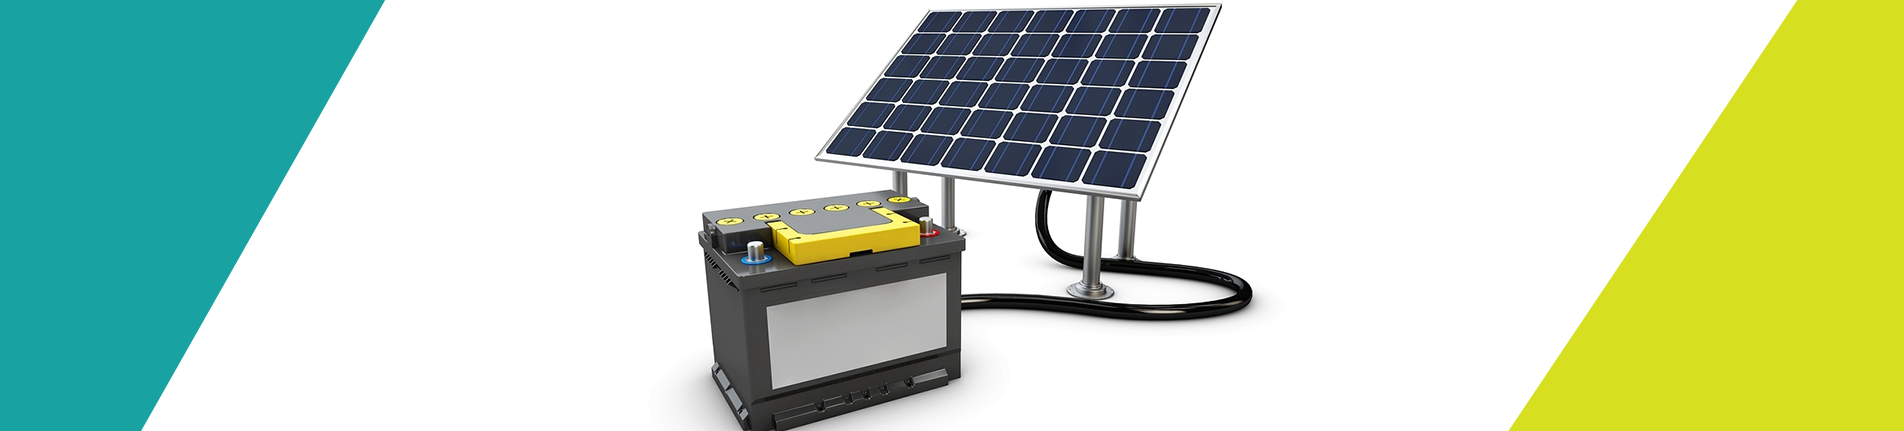 Como funcionam os sistemas fotovoltaicos Off-Grid?